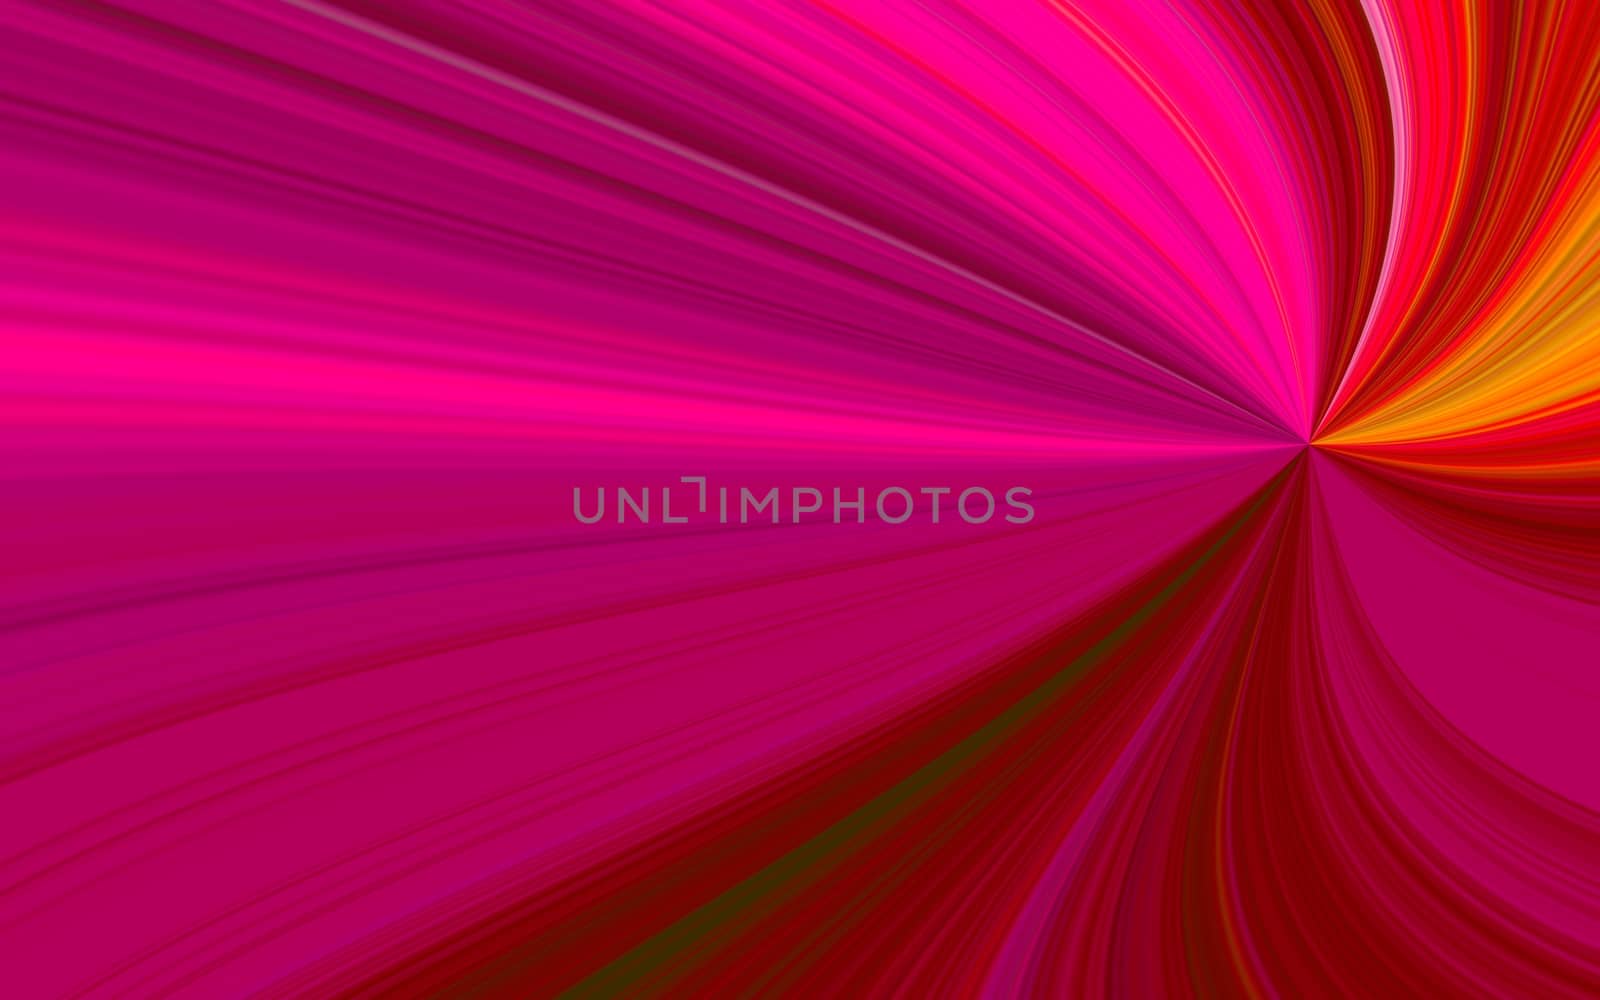 illustration of redsunburst - digital high resolution